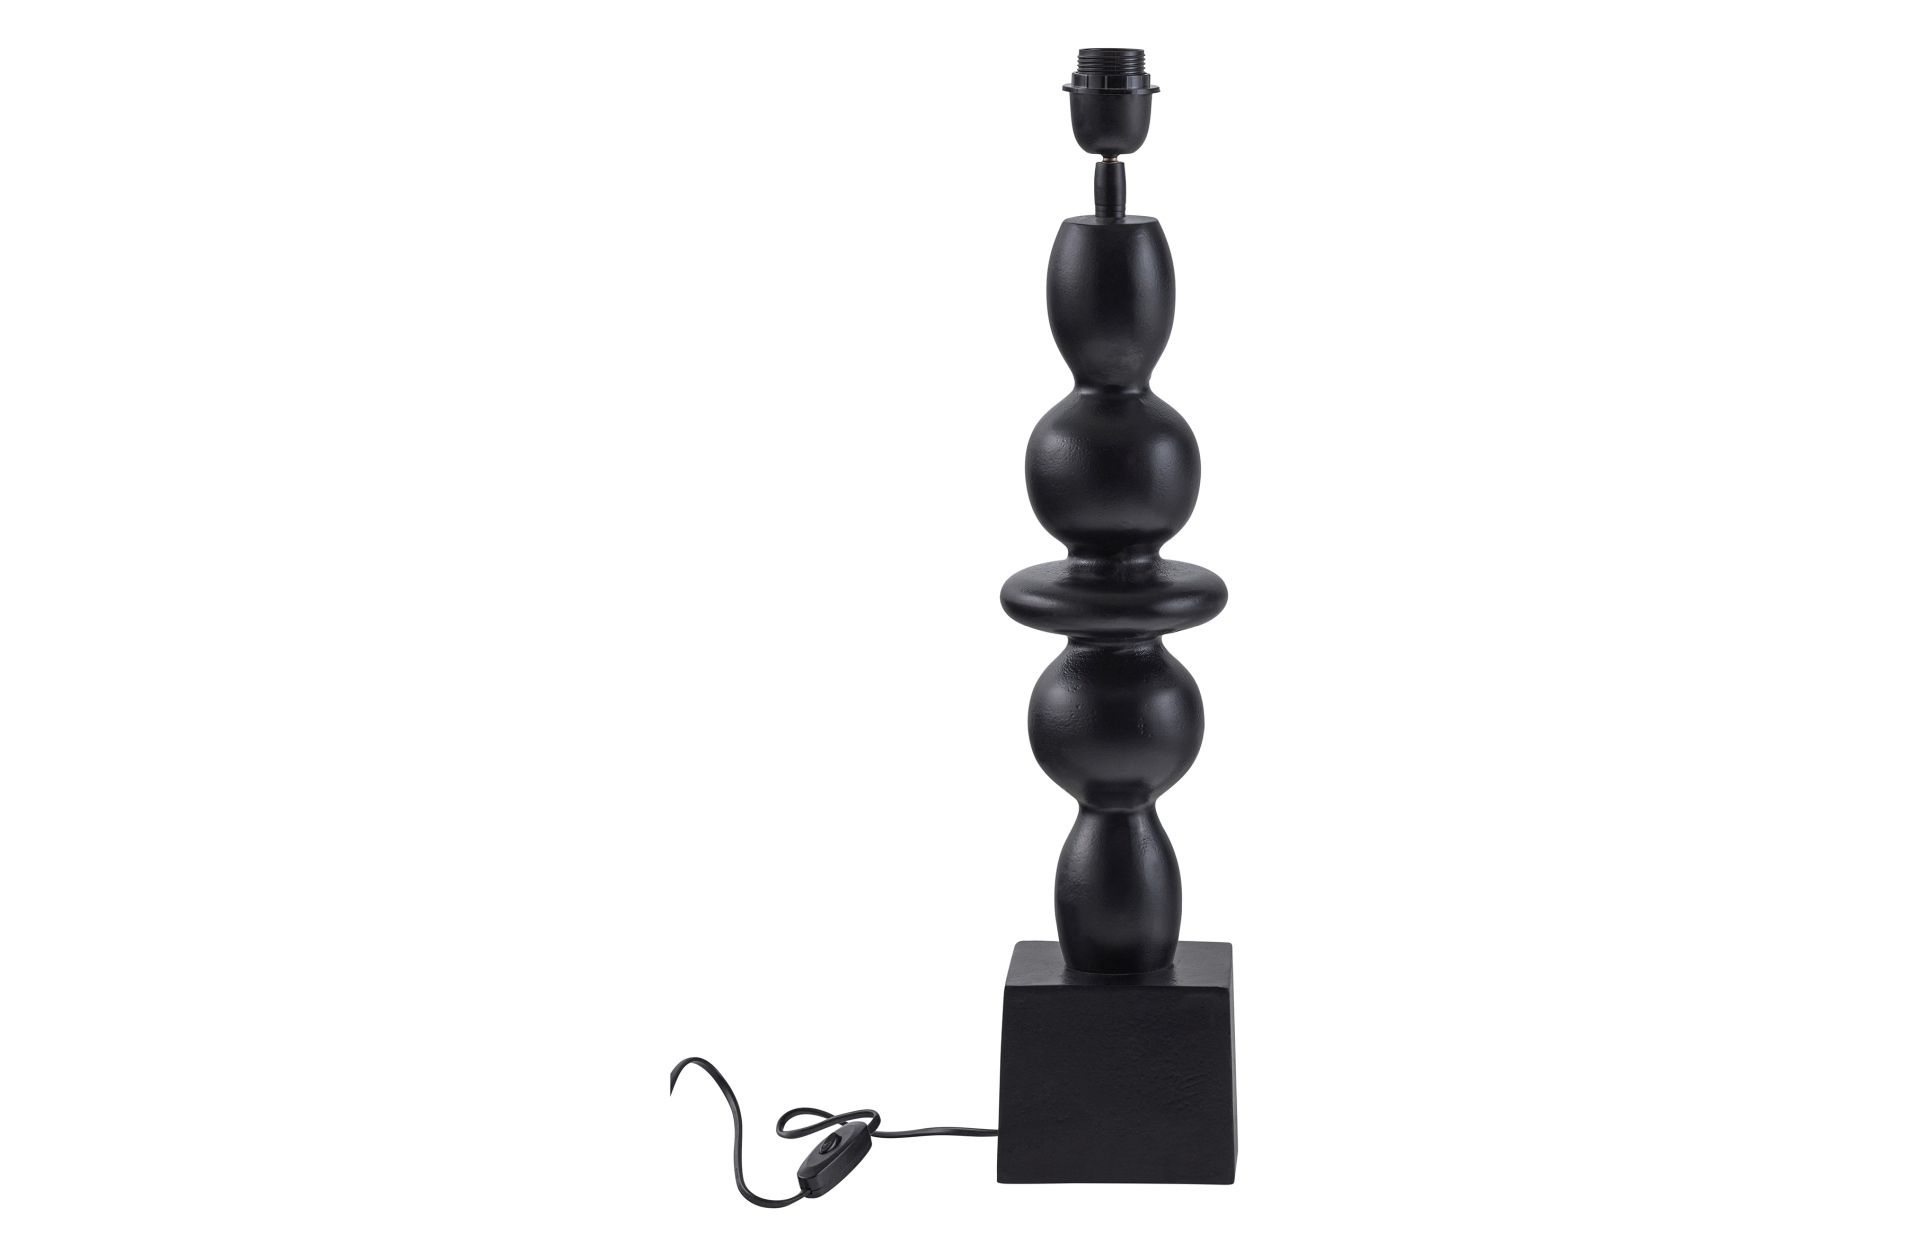 Der Lampenfuß Chrissie überzeugt mit seinem klassischen Design. Gefertigt wurde er aus Aluminium, welches einen schwarzen Farbton besitzen. Der Lampenfuß besitzt eine Höhe von 65 cm.